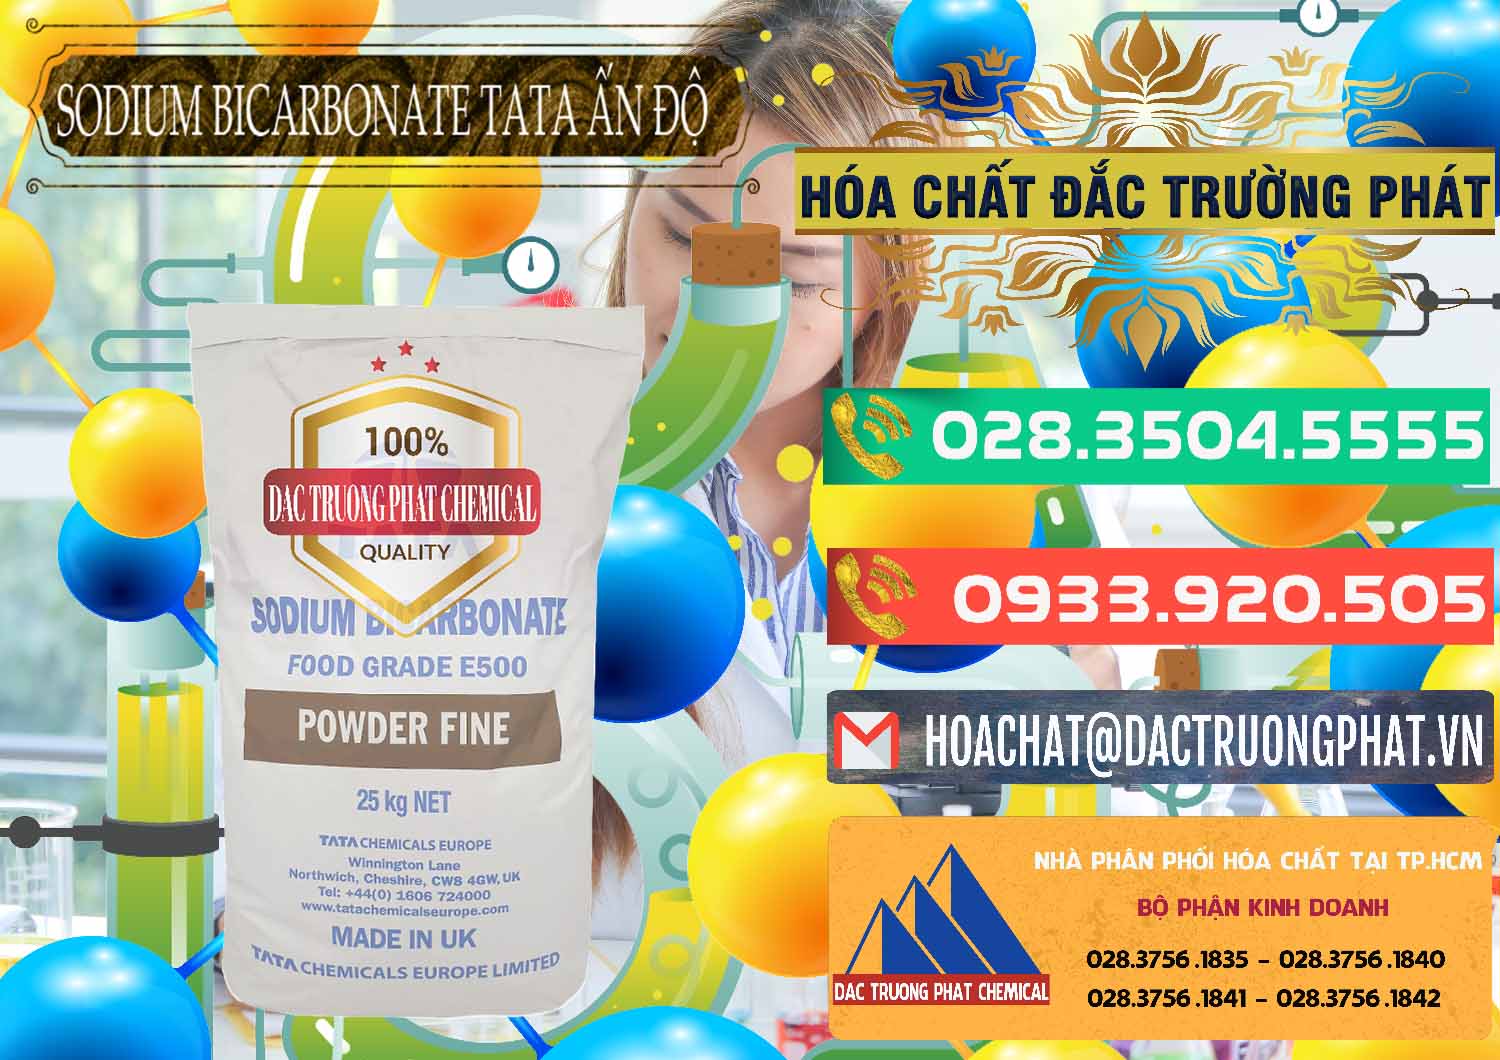 Công ty chuyên cung ứng - bán Sodium Bicarbonate – Bicar NaHCO3 E500 Thực Phẩm Food Grade Tata Ấn Độ India - 0261 - Nhà nhập khẩu ( cung cấp ) hóa chất tại TP.HCM - congtyhoachat.com.vn